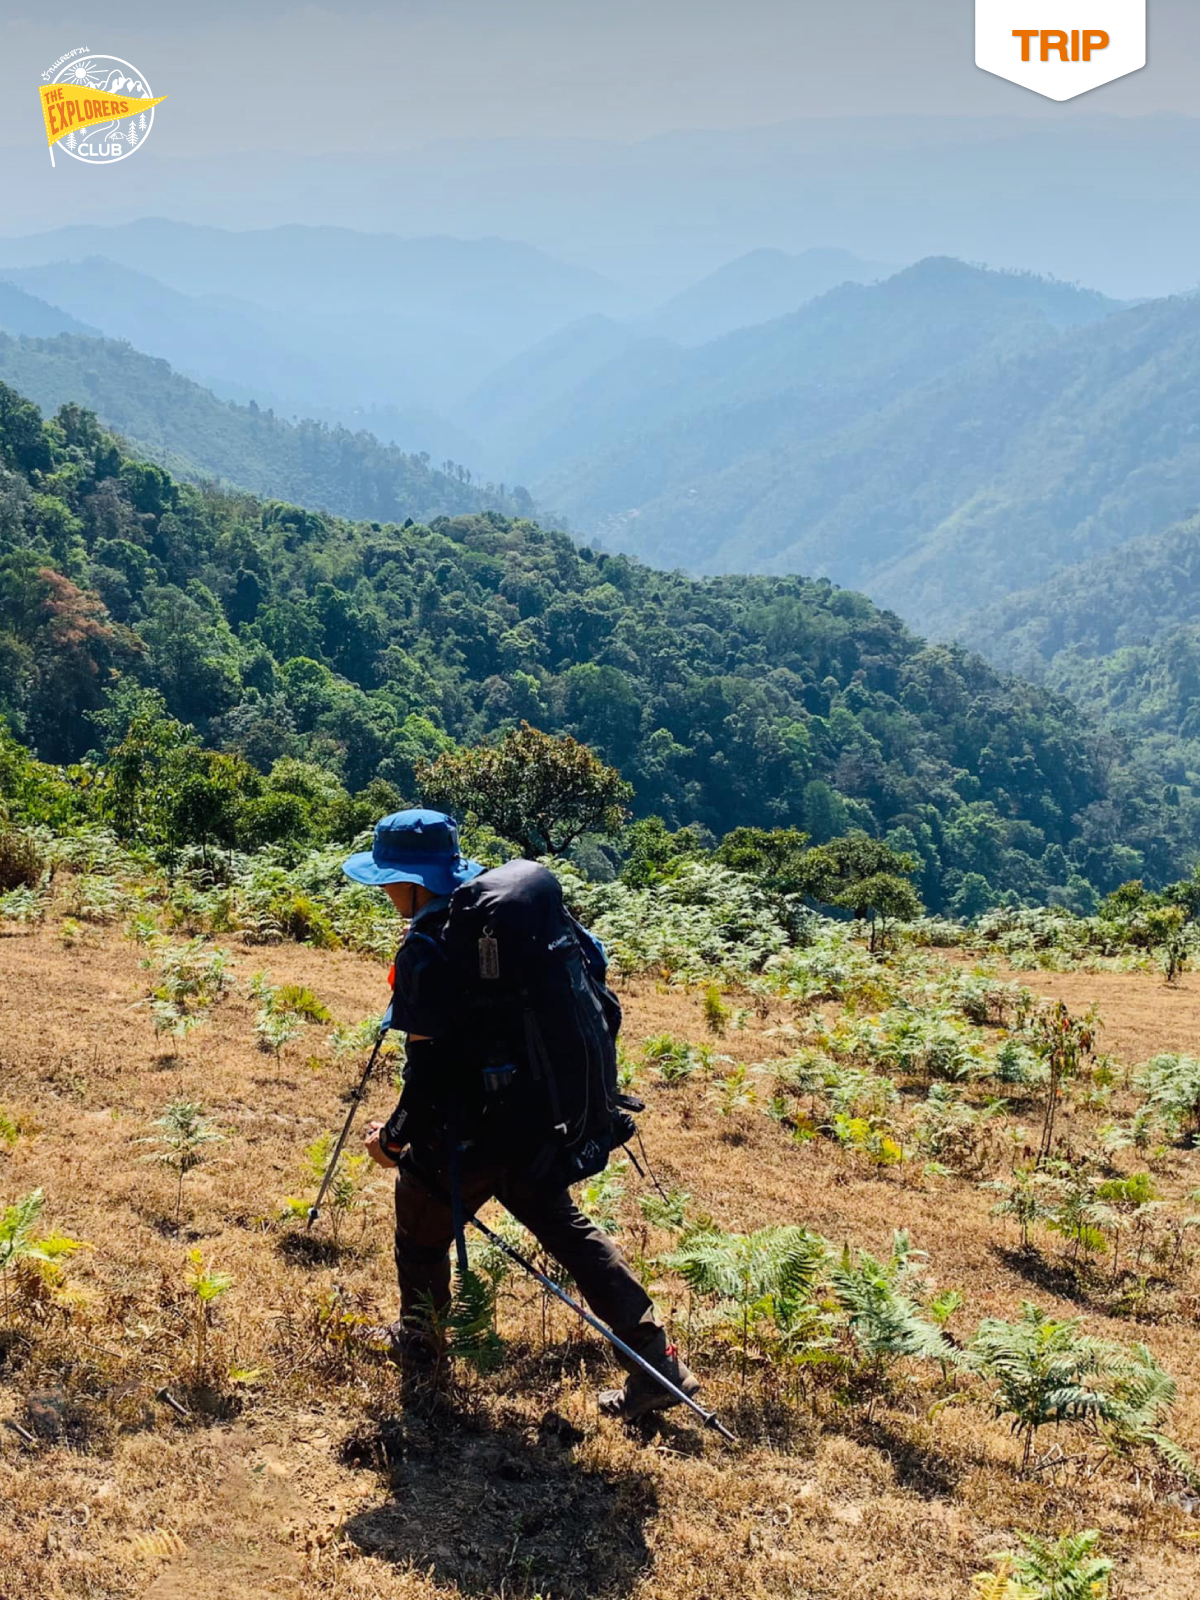 เดินแบกกระเป๋าเข้าป่า 4 วัน 50 กิโลเมตร เส้นทางเดินป่าระยะไกลชุมชนขุนน้ำเงา แม่ฮ่องสอน